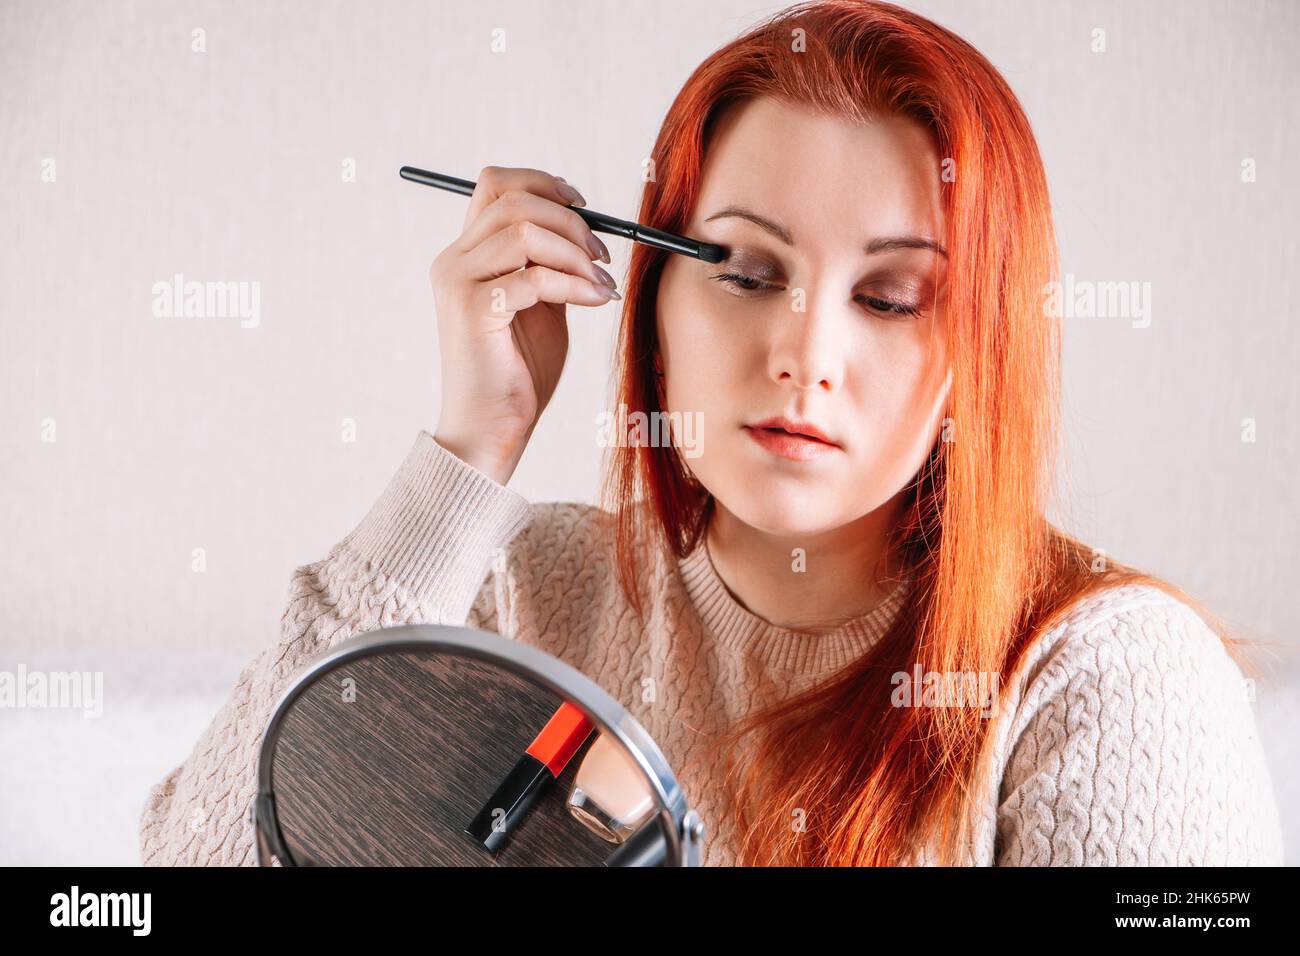 Giovane donna con capelli rossi applica trucco. La signora guarda nello specchio e usa i cosmetici. Foto Stock